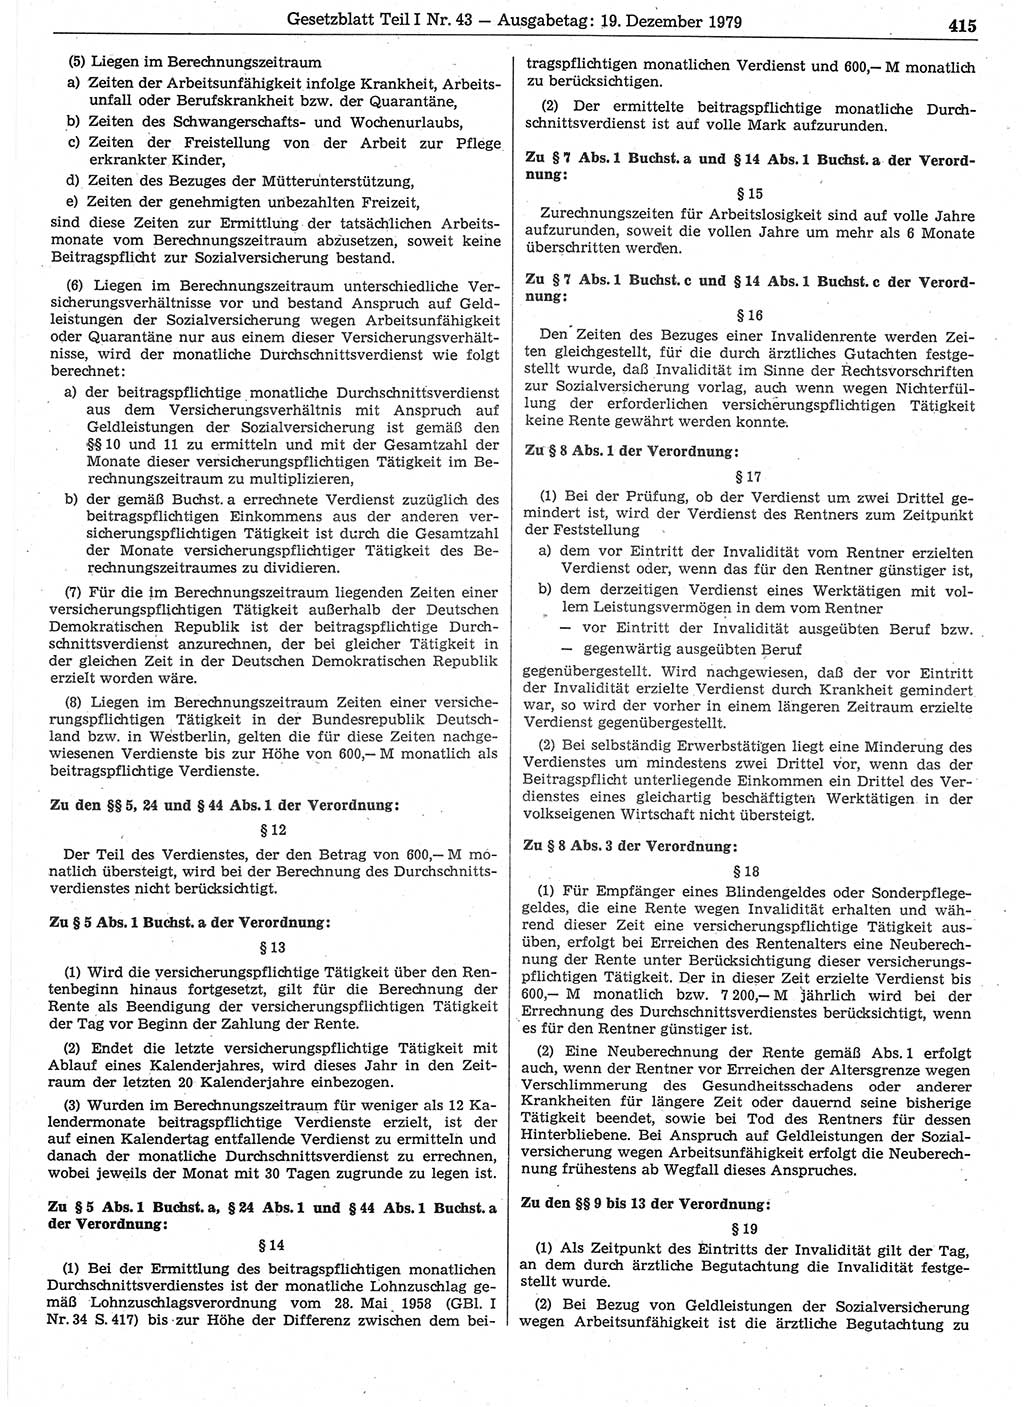 Gesetzblatt (GBl.) der Deutschen Demokratischen Republik (DDR) Teil Ⅰ 1979, Seite 415 (GBl. DDR Ⅰ 1979, S. 415)